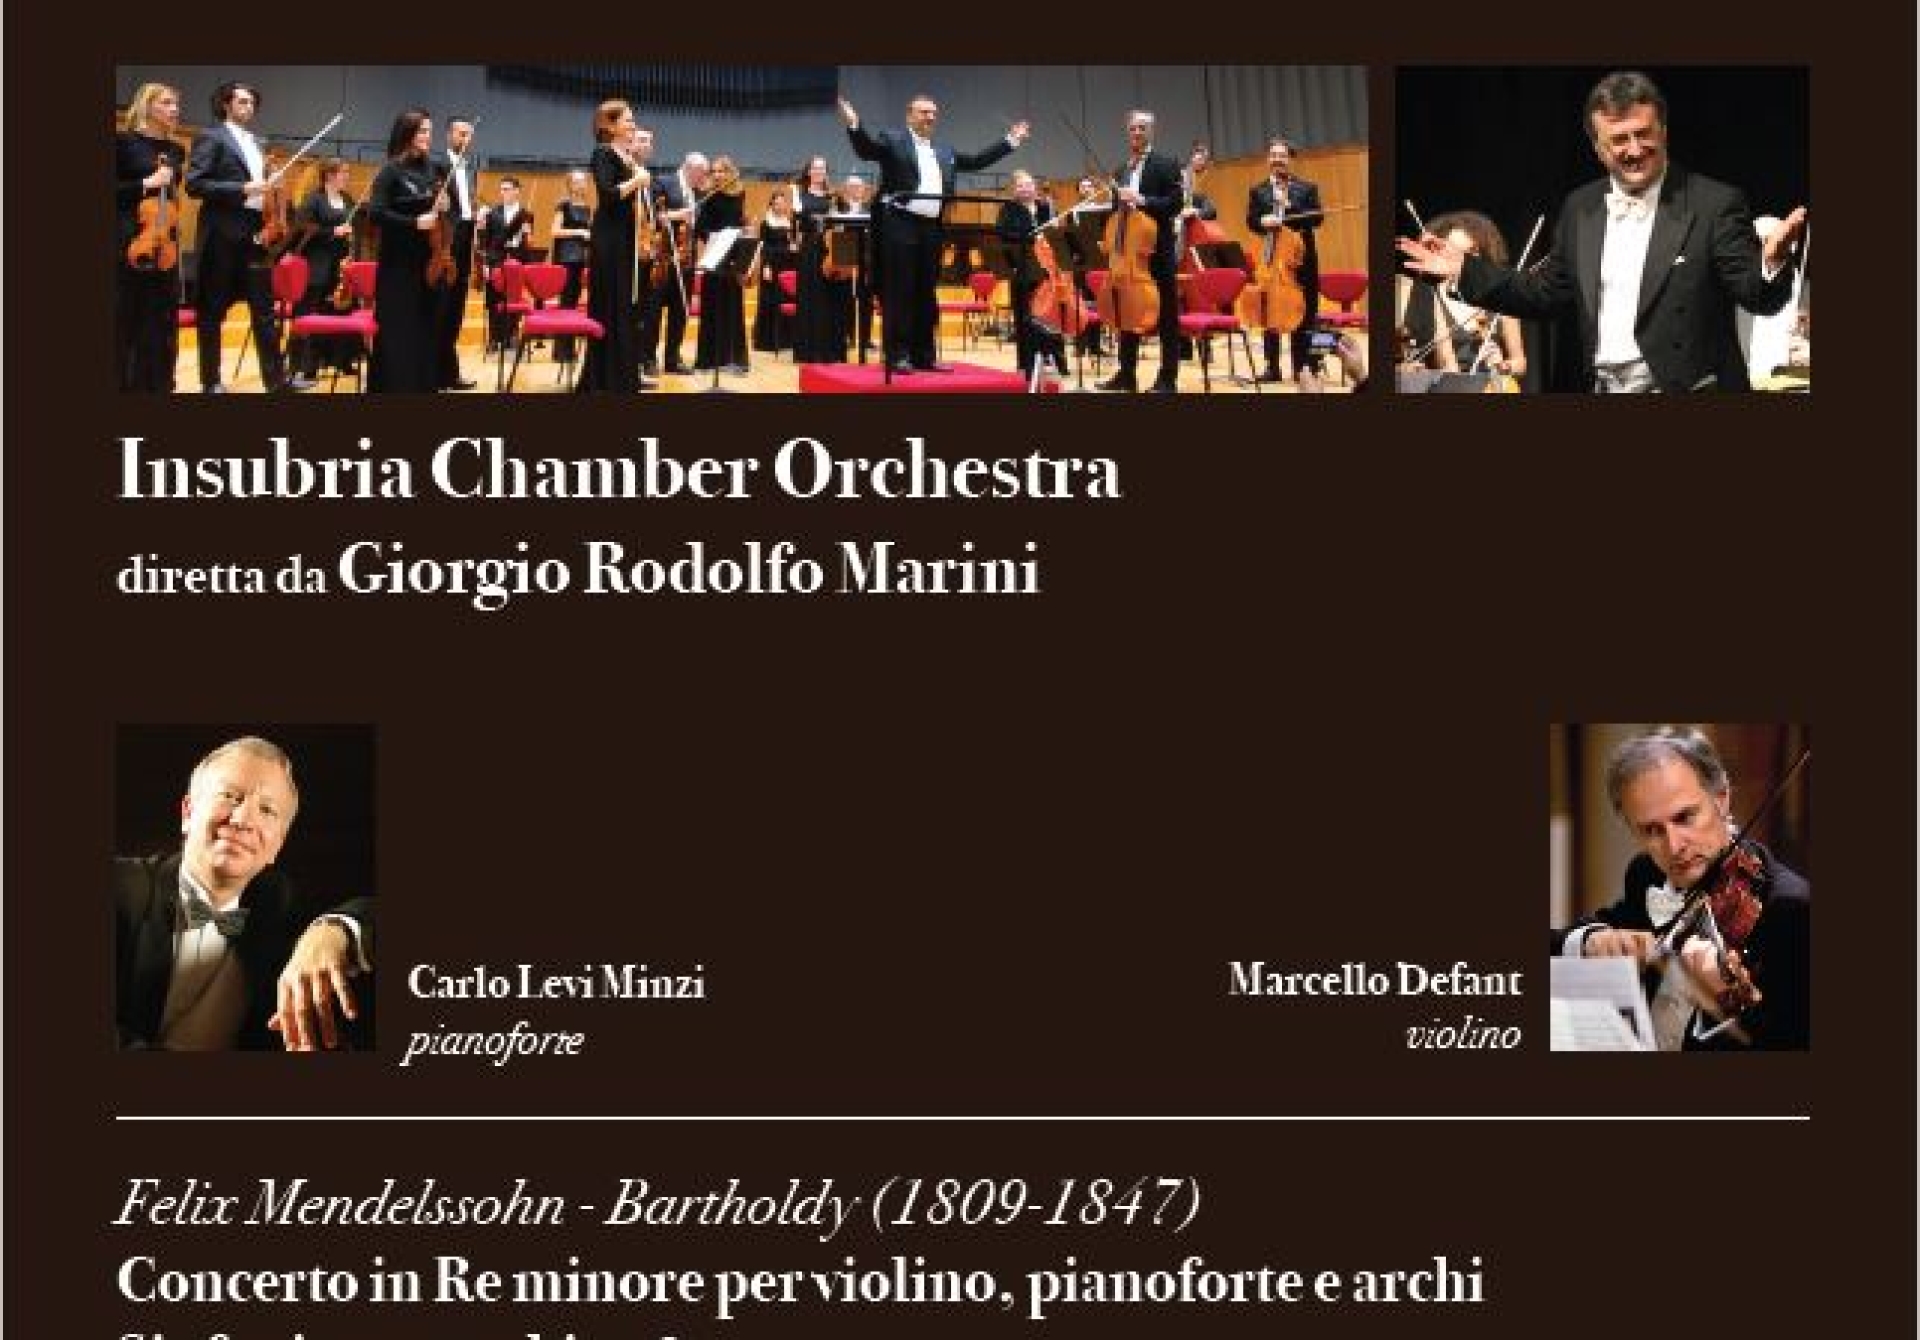 Insubria Chamber Orchestra - "I Concerti del Giovane Mendelssohn e le ultime sinfonie per archi"